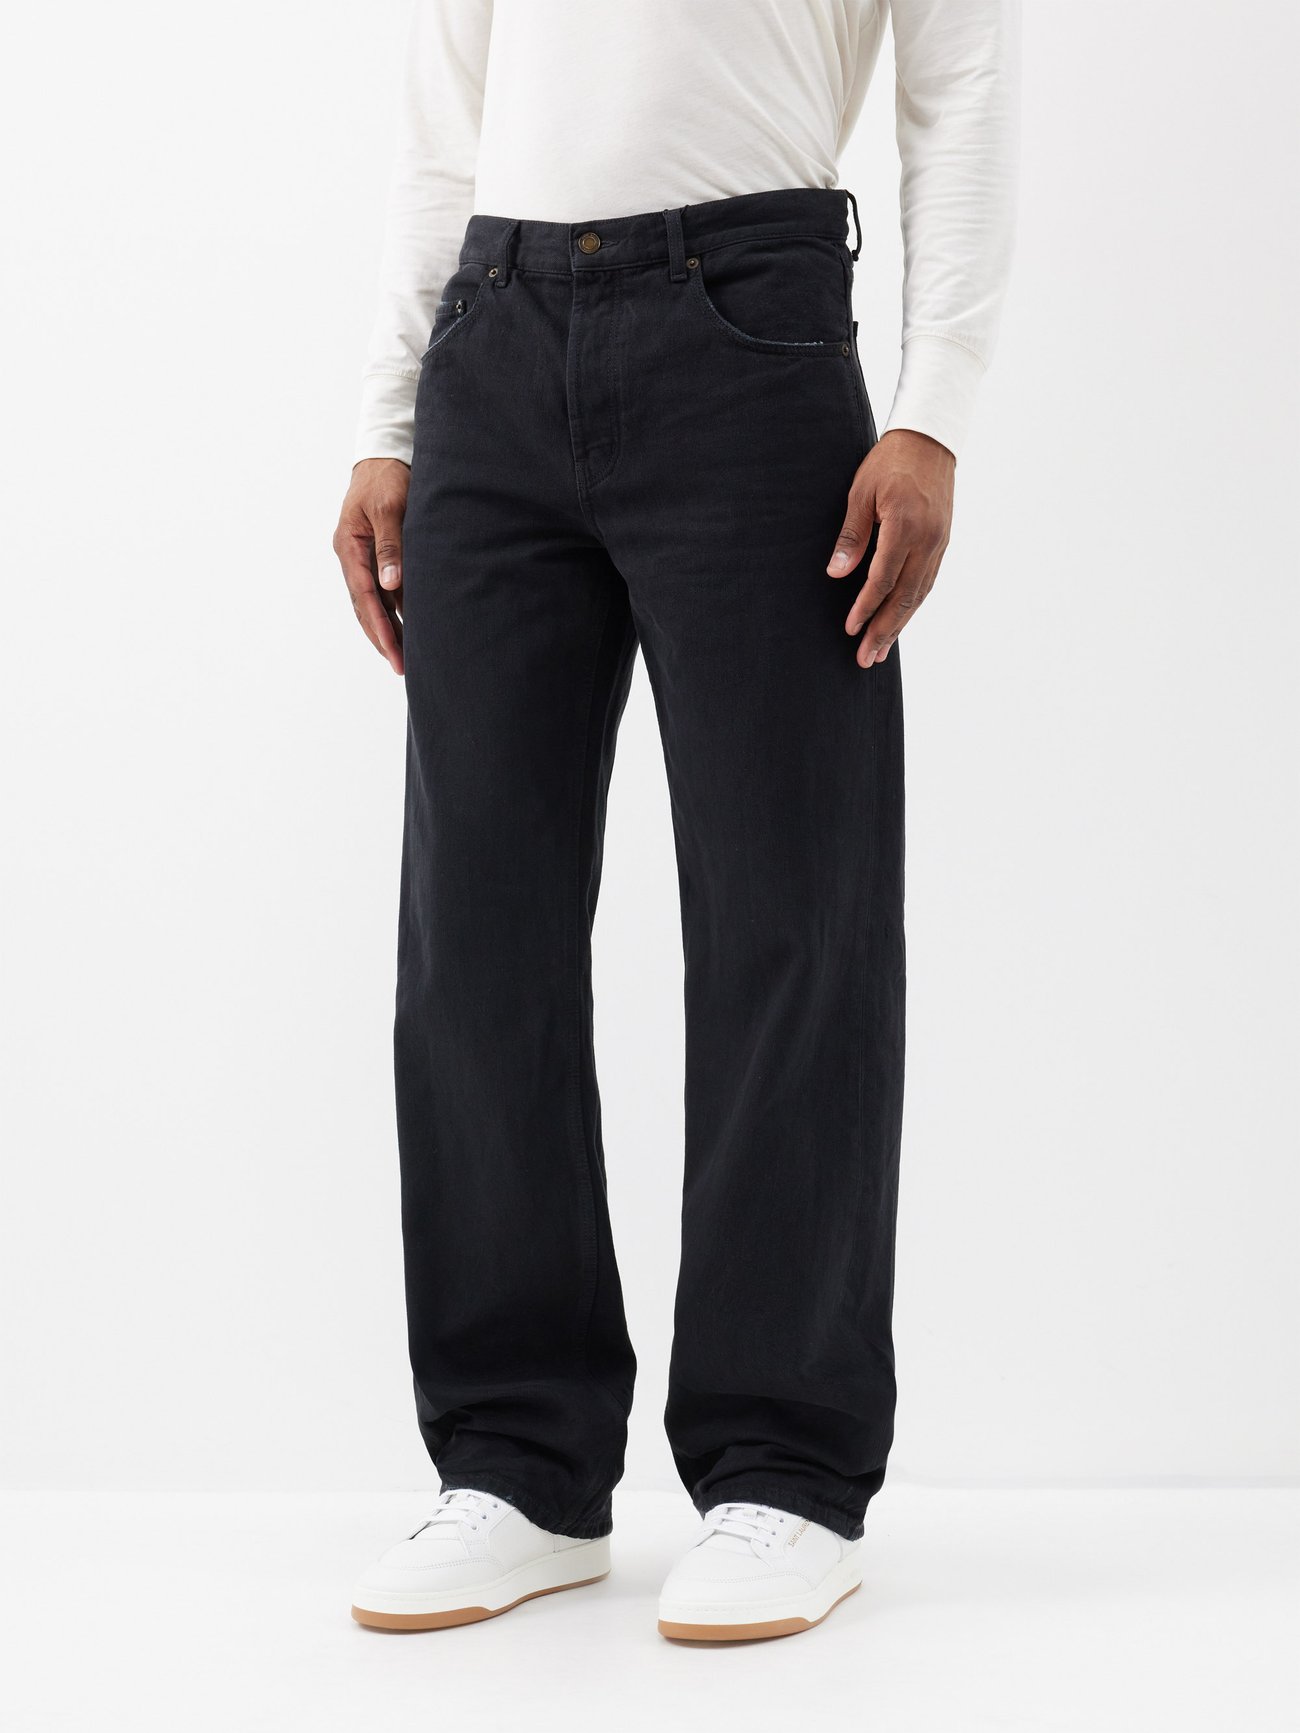 Black Extreme Baggy wide-leg jeans | Saint Laurent | MATCHES UK